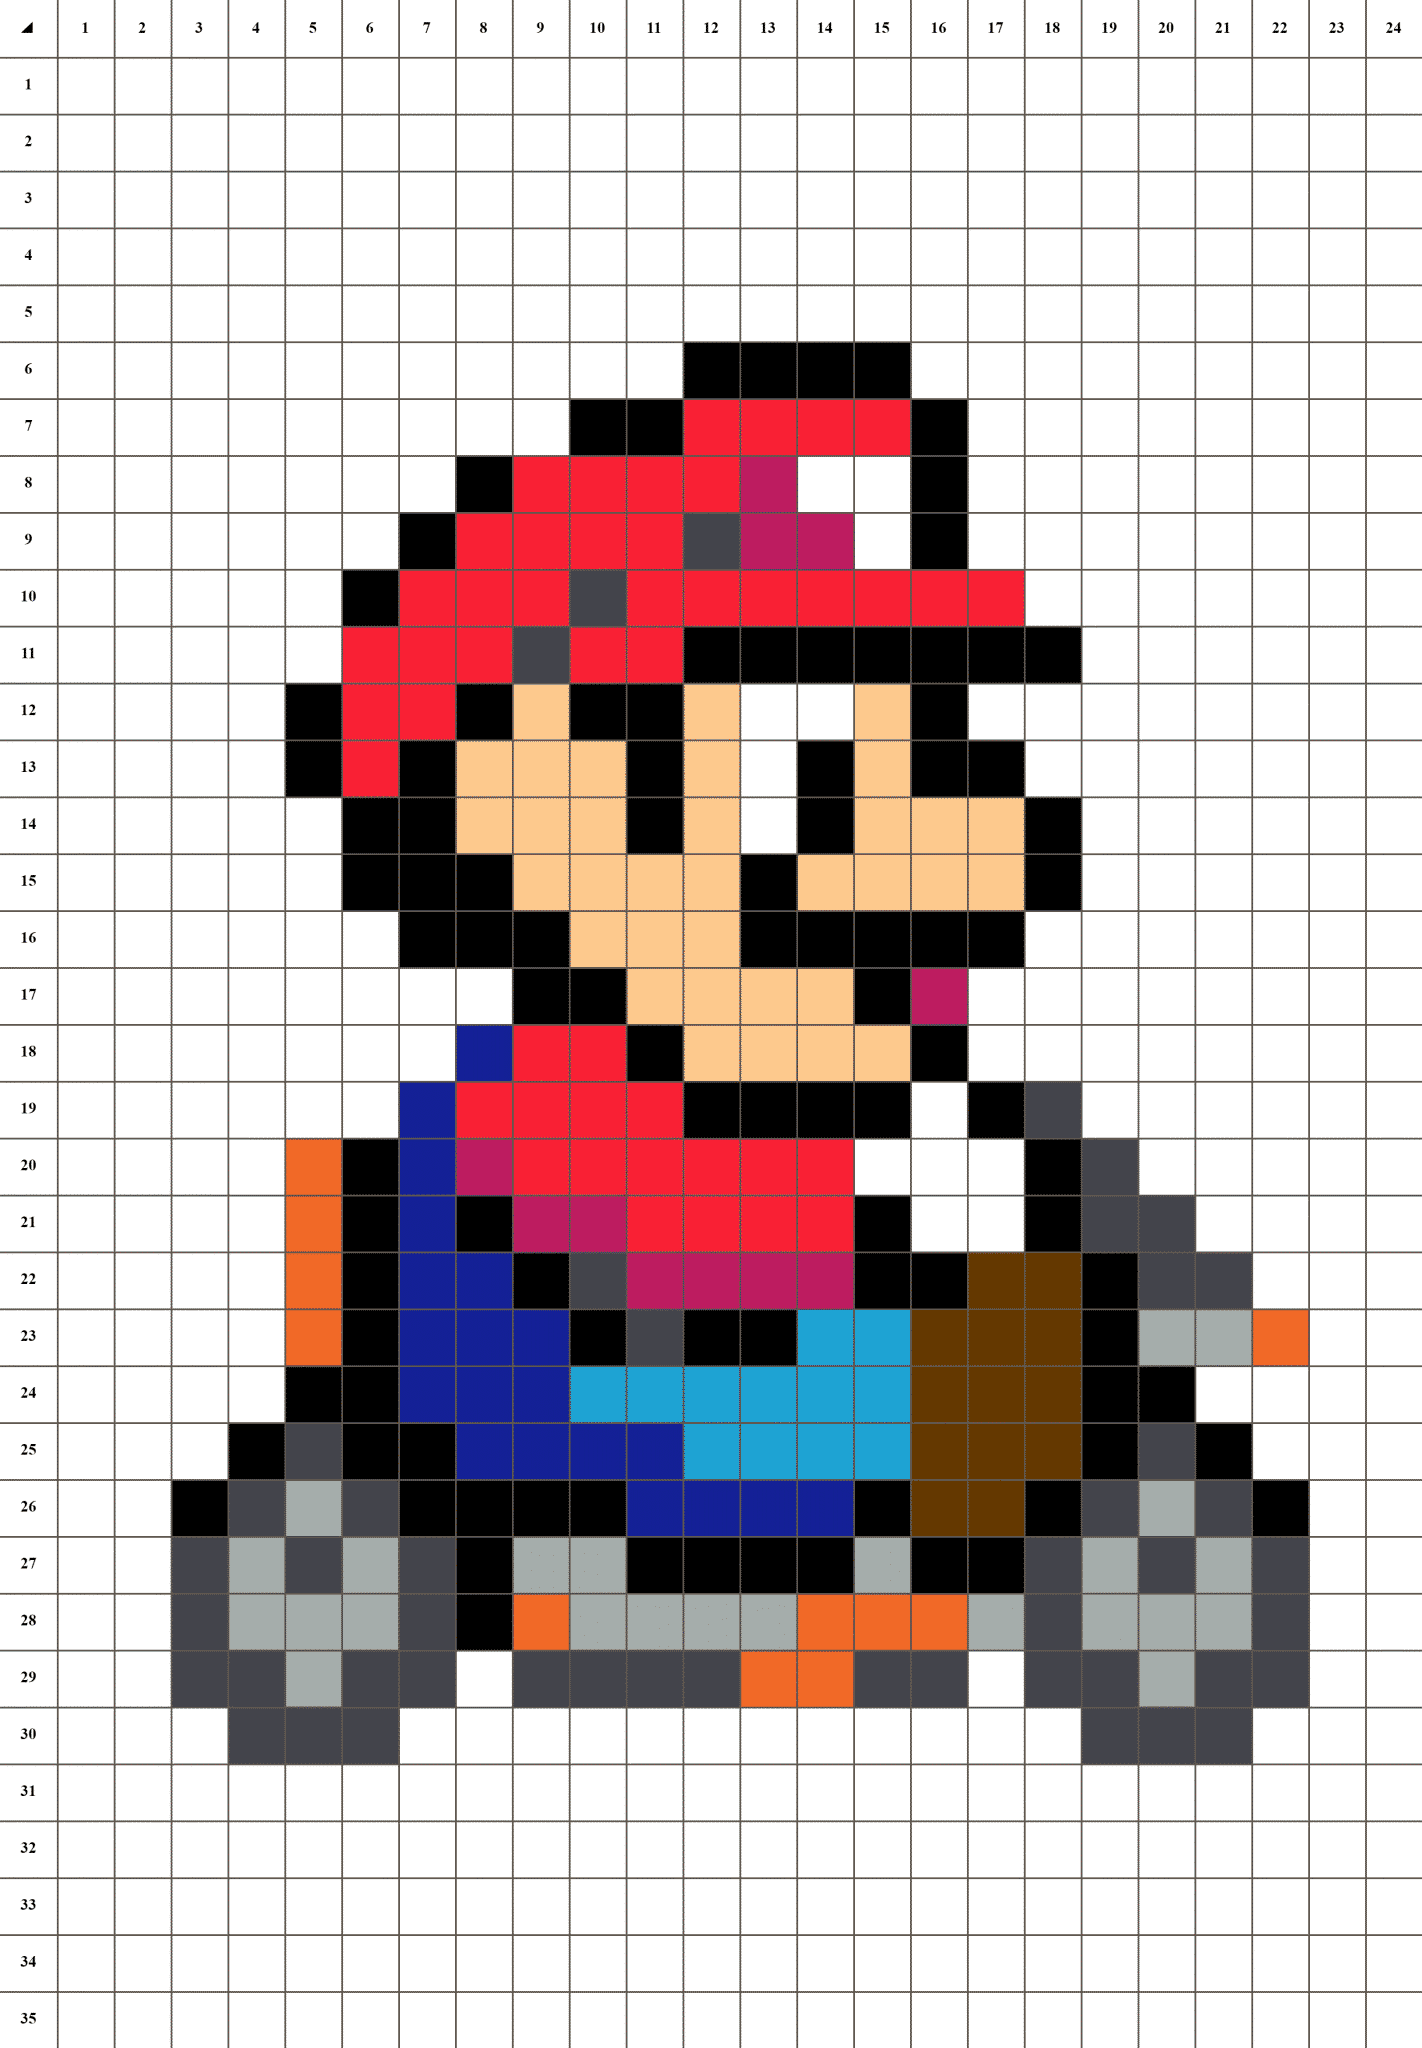 Mario Kart Pixel art